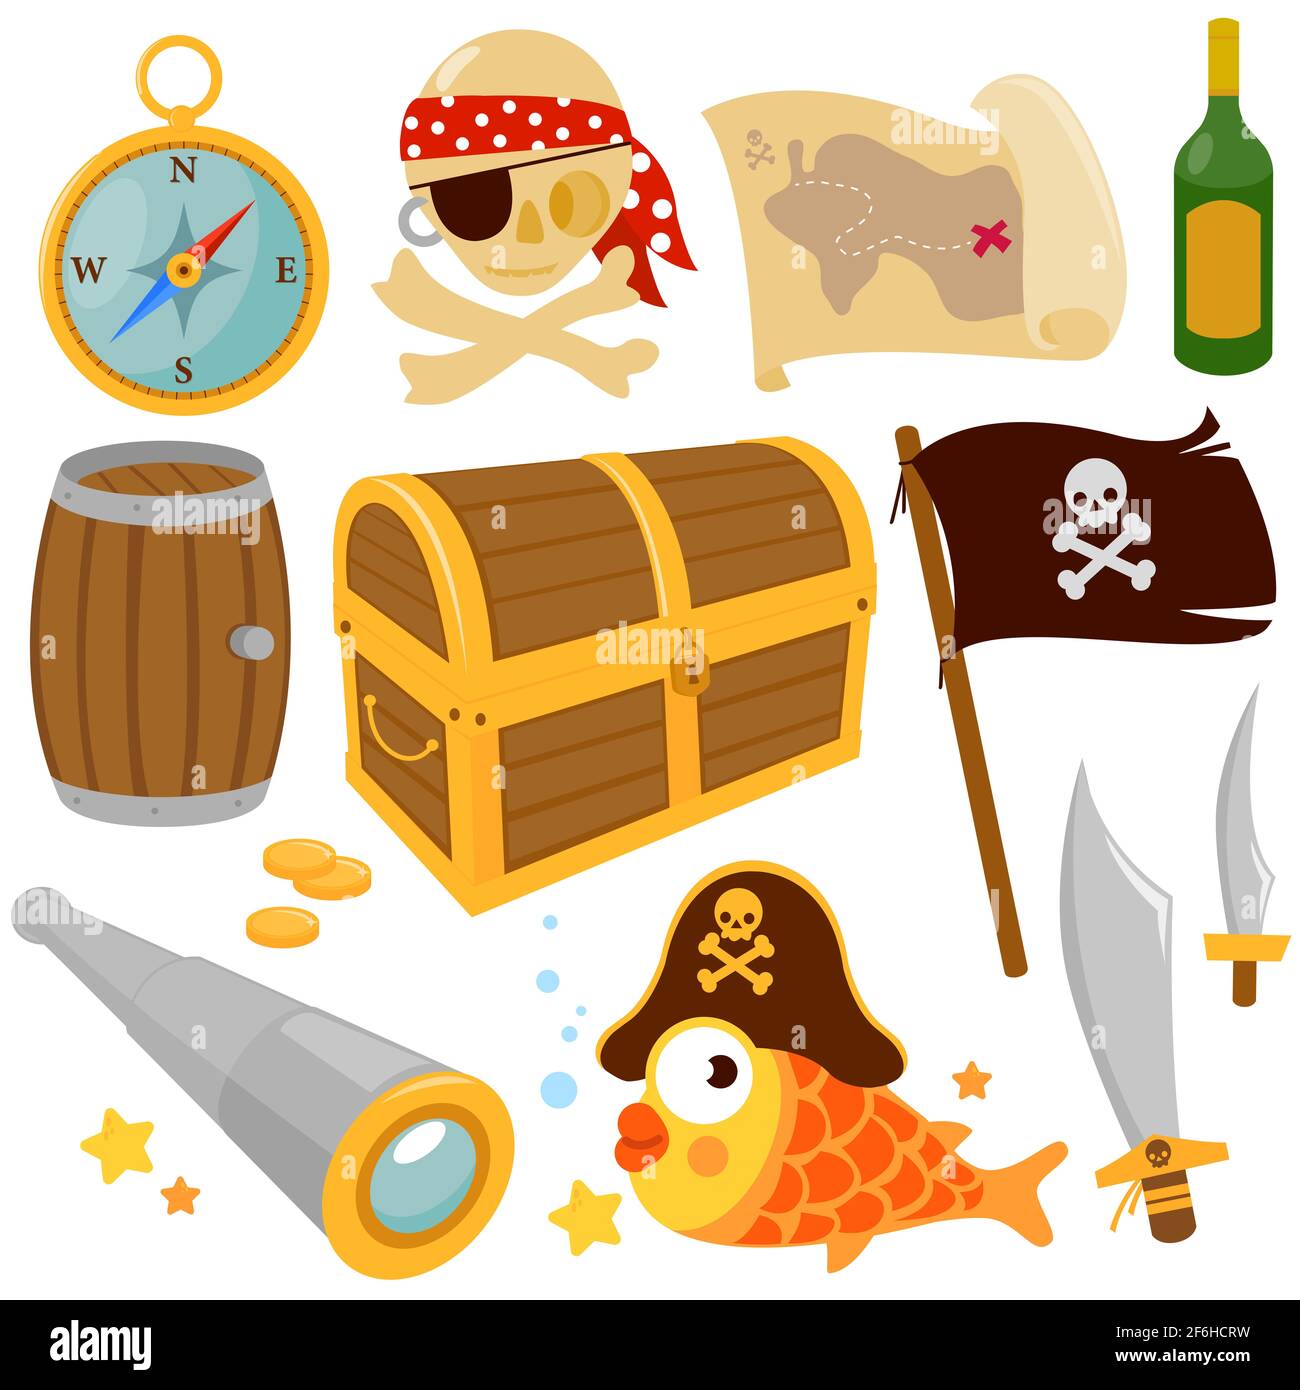 Collection d'illustrations d'objets pirates. Coffre au Trésor, crâne de pirate, poisson, drapeau de pirate, boussole et épées de pirate. Banque D'Images